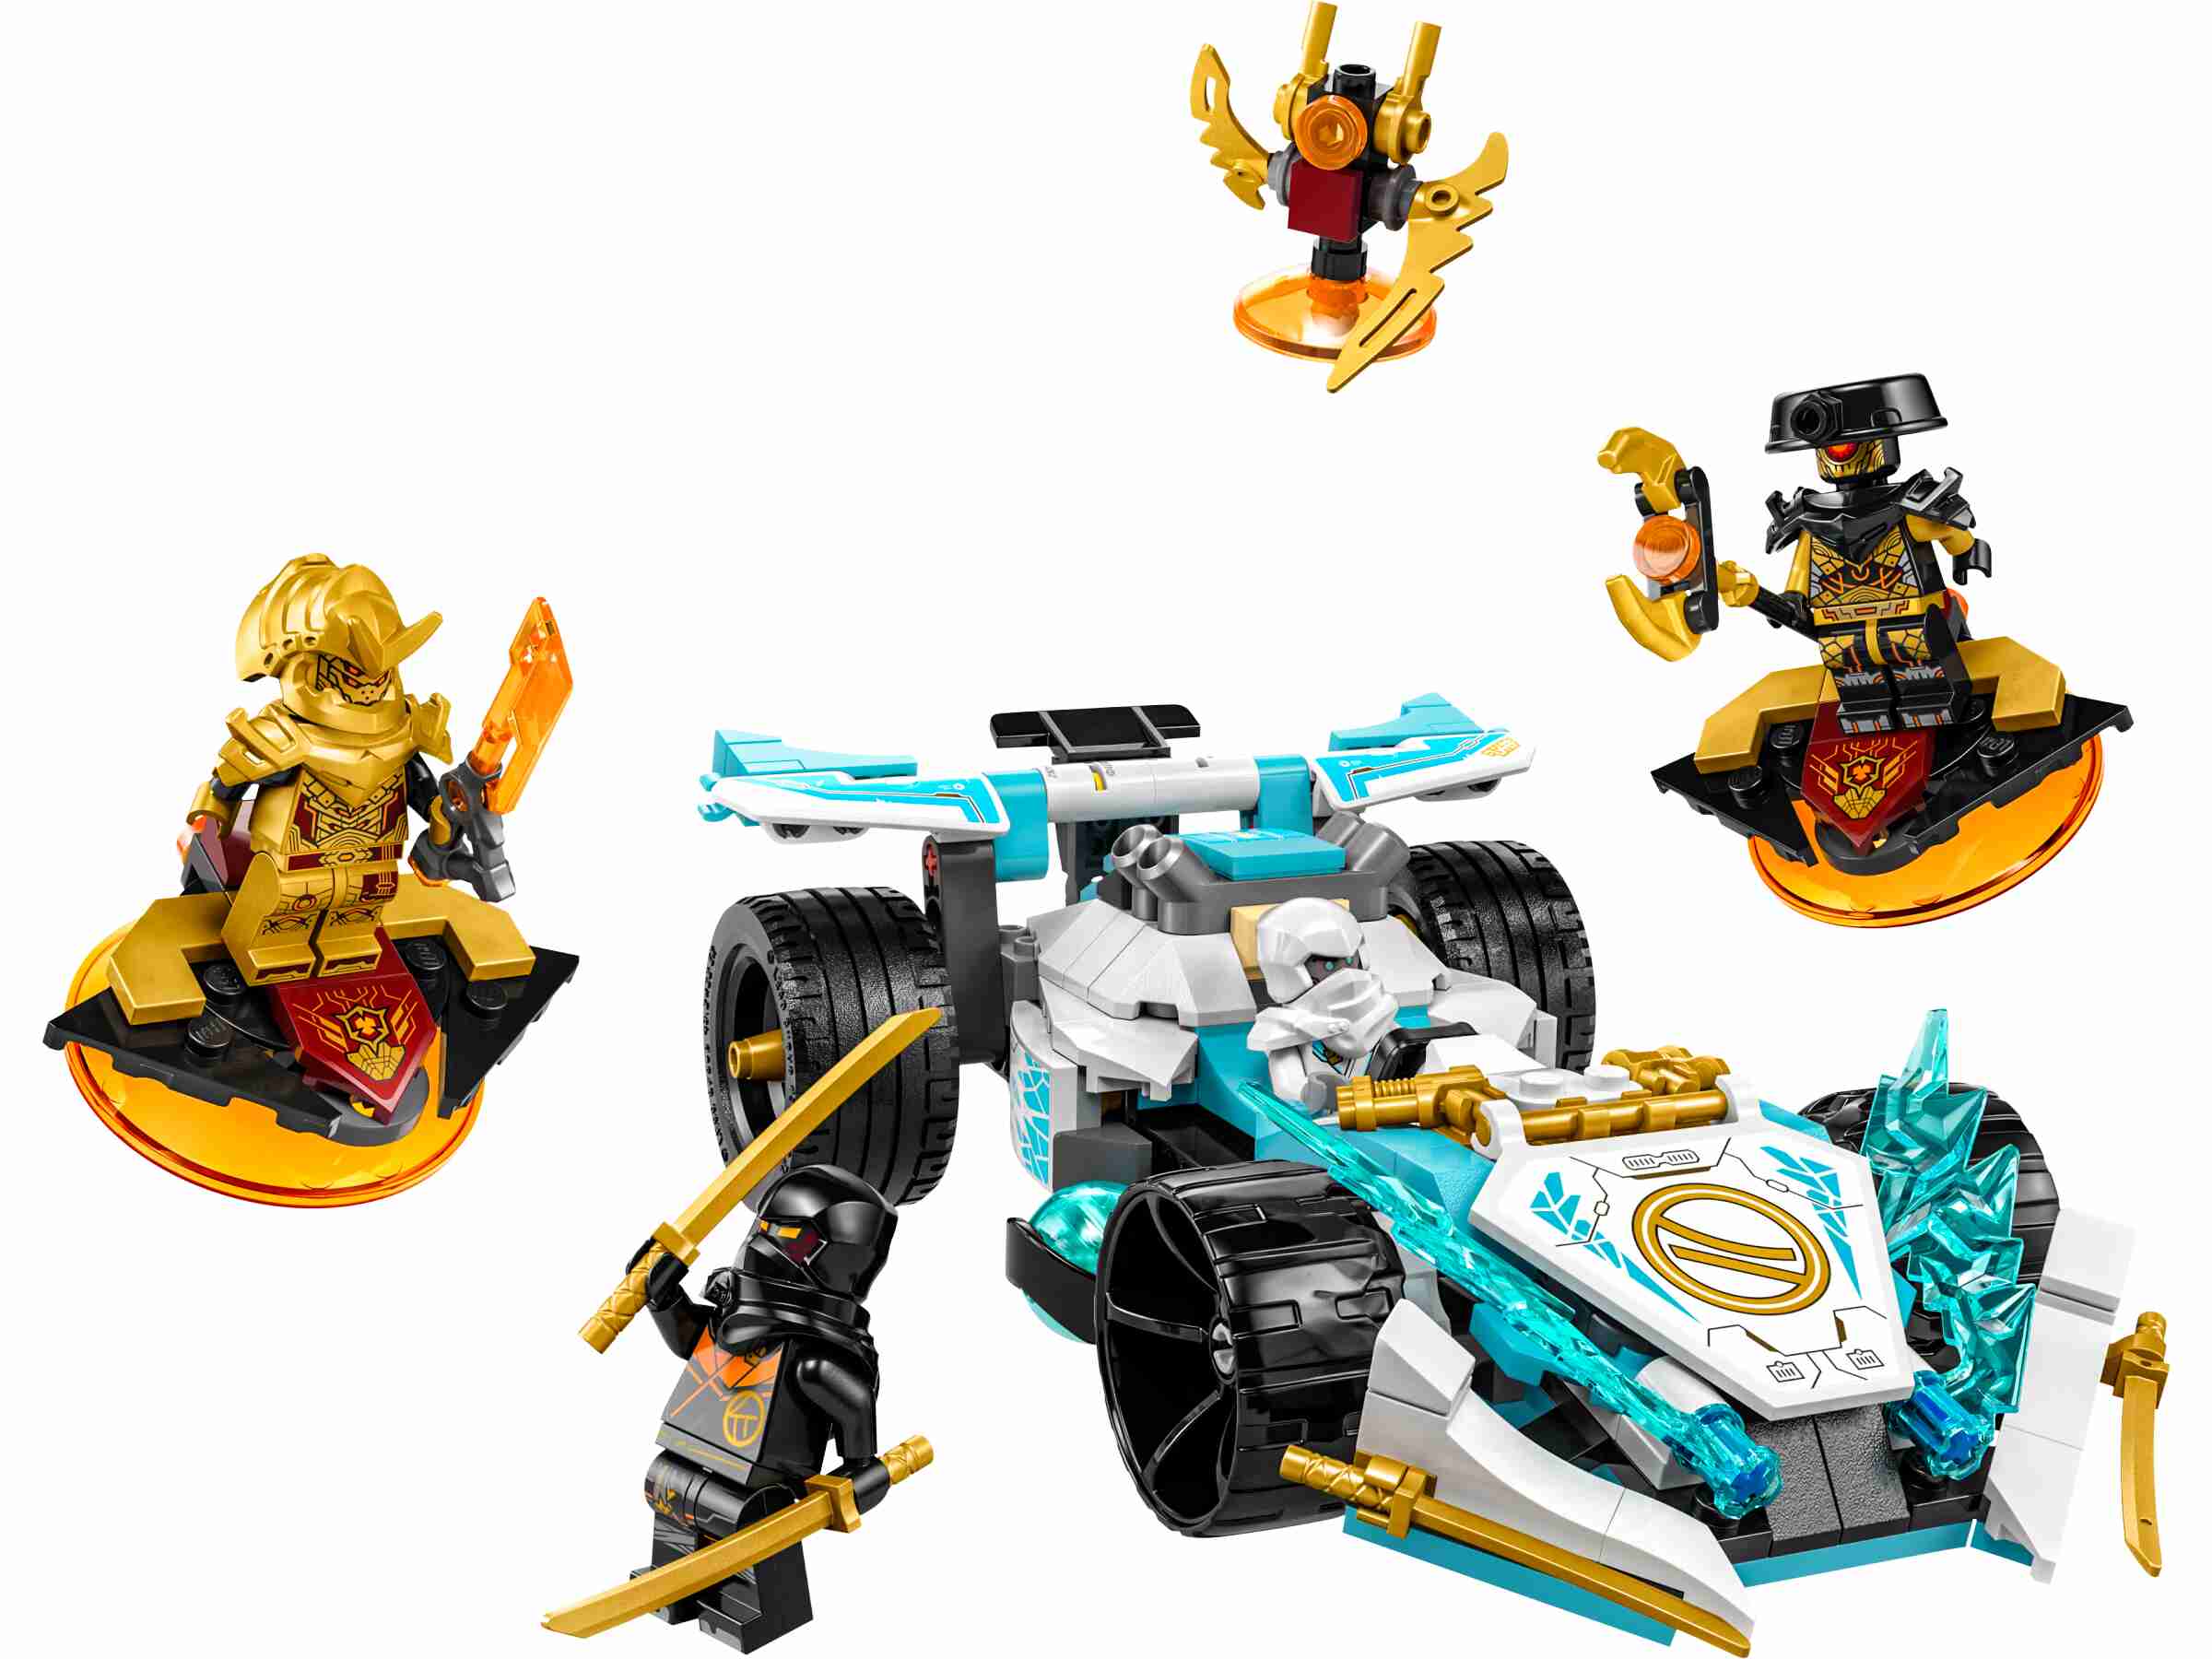 LEGO 71791 NINJAGO Zanes Drachenpower-Spinjitzu-Rennwagen, 4 Minifiguren